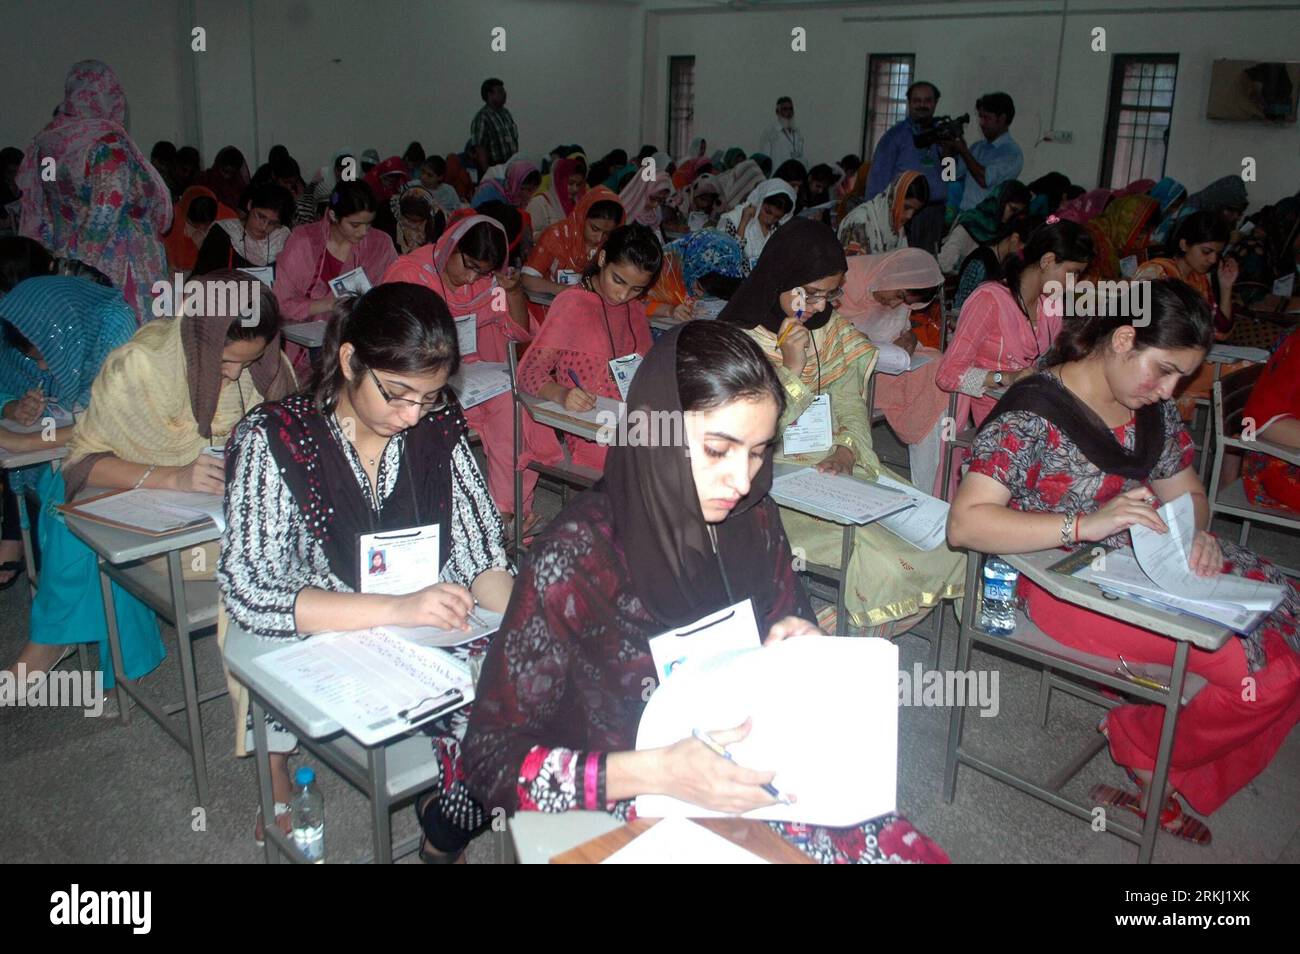 Bildnummer: 55955229 Datum: 13.09.2011 Copyright: imago/Xinhua (110913) -- LAHORE, 13. September 2011 (Xinhua) -- pakistanische Studenten machen eine medizinische Einreiseprüfung in Lahore, 13. September 2011. Bis zu 33.694 Kandidaten erschienen in den Eintrittstests für die Zulassung zu medizinischen Fakultäten in Punjab von der University of Health Sciences (UHS) am Dienstag gegeben. (Xinhua/Sajjad) (ss) PAKISTAN-LAHORE-EDUCATION-MEDICAL ENTRY TEST PUBLICATIONxNOTxINxCHN Gesellschaft Bildung Universität Studenten Aufnahmeprüfung Medizin x0x xst 2011 quer 55955229 Datum 13 09 2011 Copyright Imago XINHUA Lahor Stockfoto